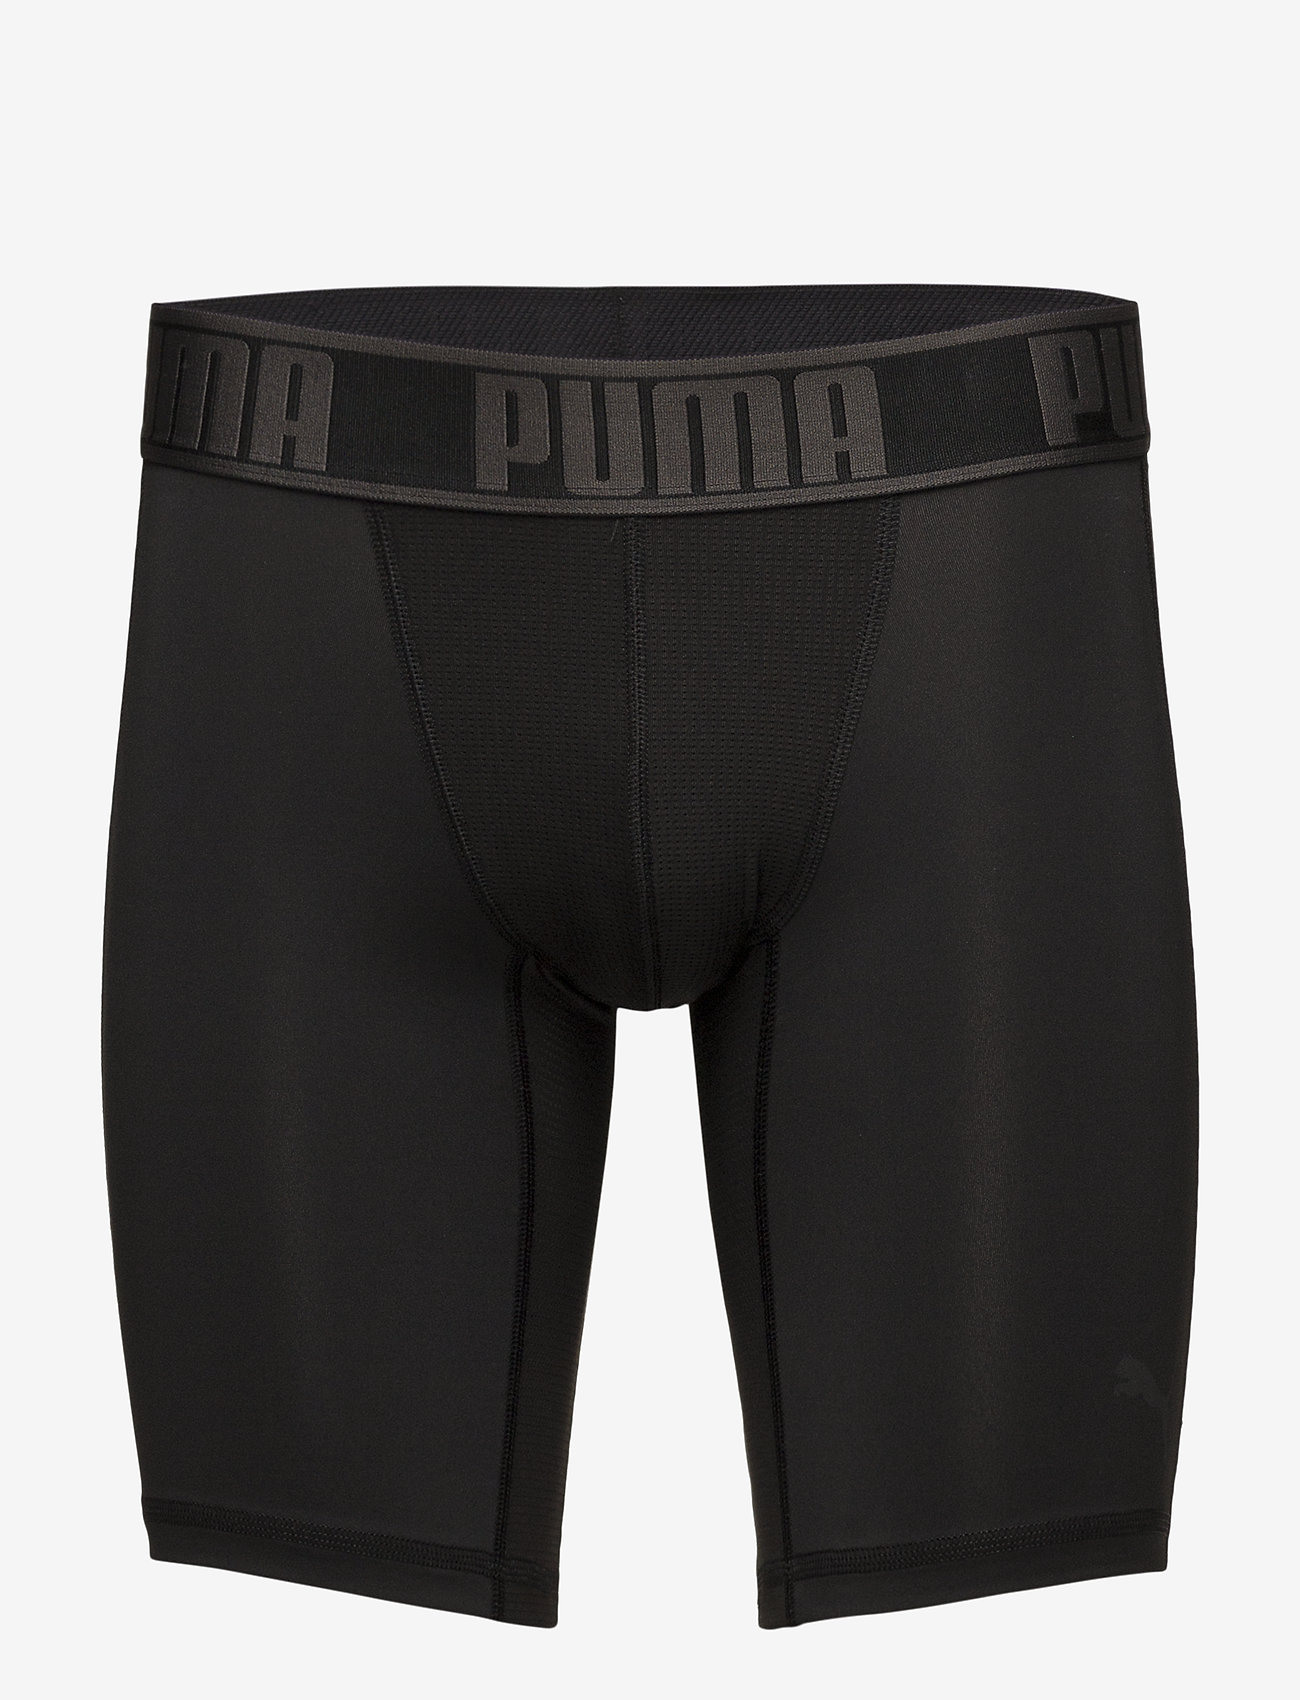 puma underwear boxer